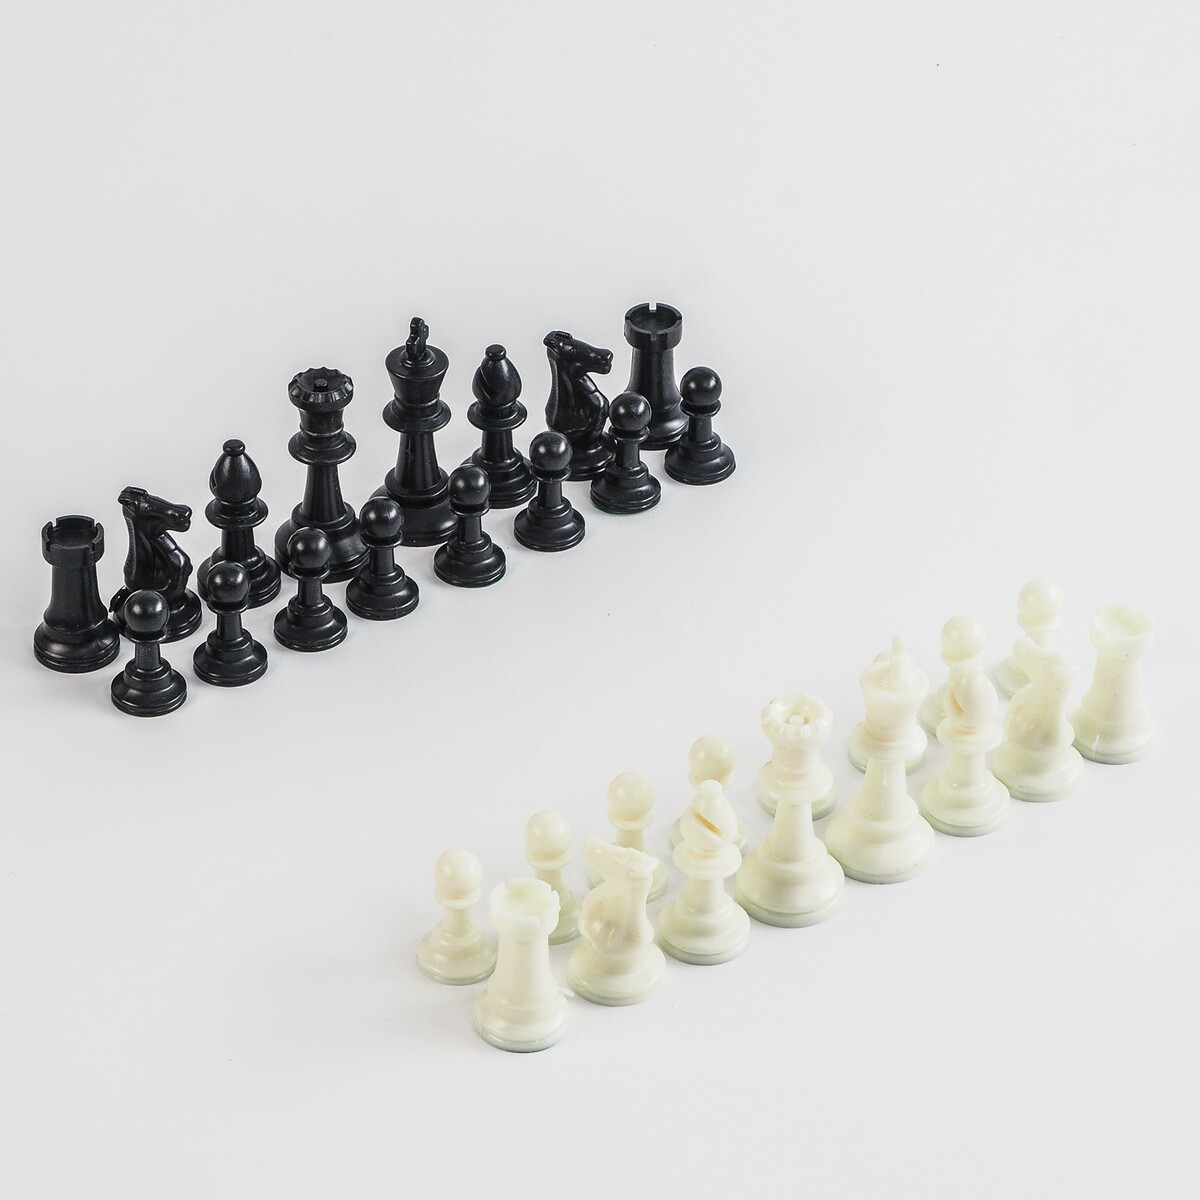 Шахматные фигуры, пластик, король h-7.5 см, пешка h-3.5 см шахматные фигуры обиходные король h 7 см d 2 4 см пешка h 4 4 см d 2 4 см